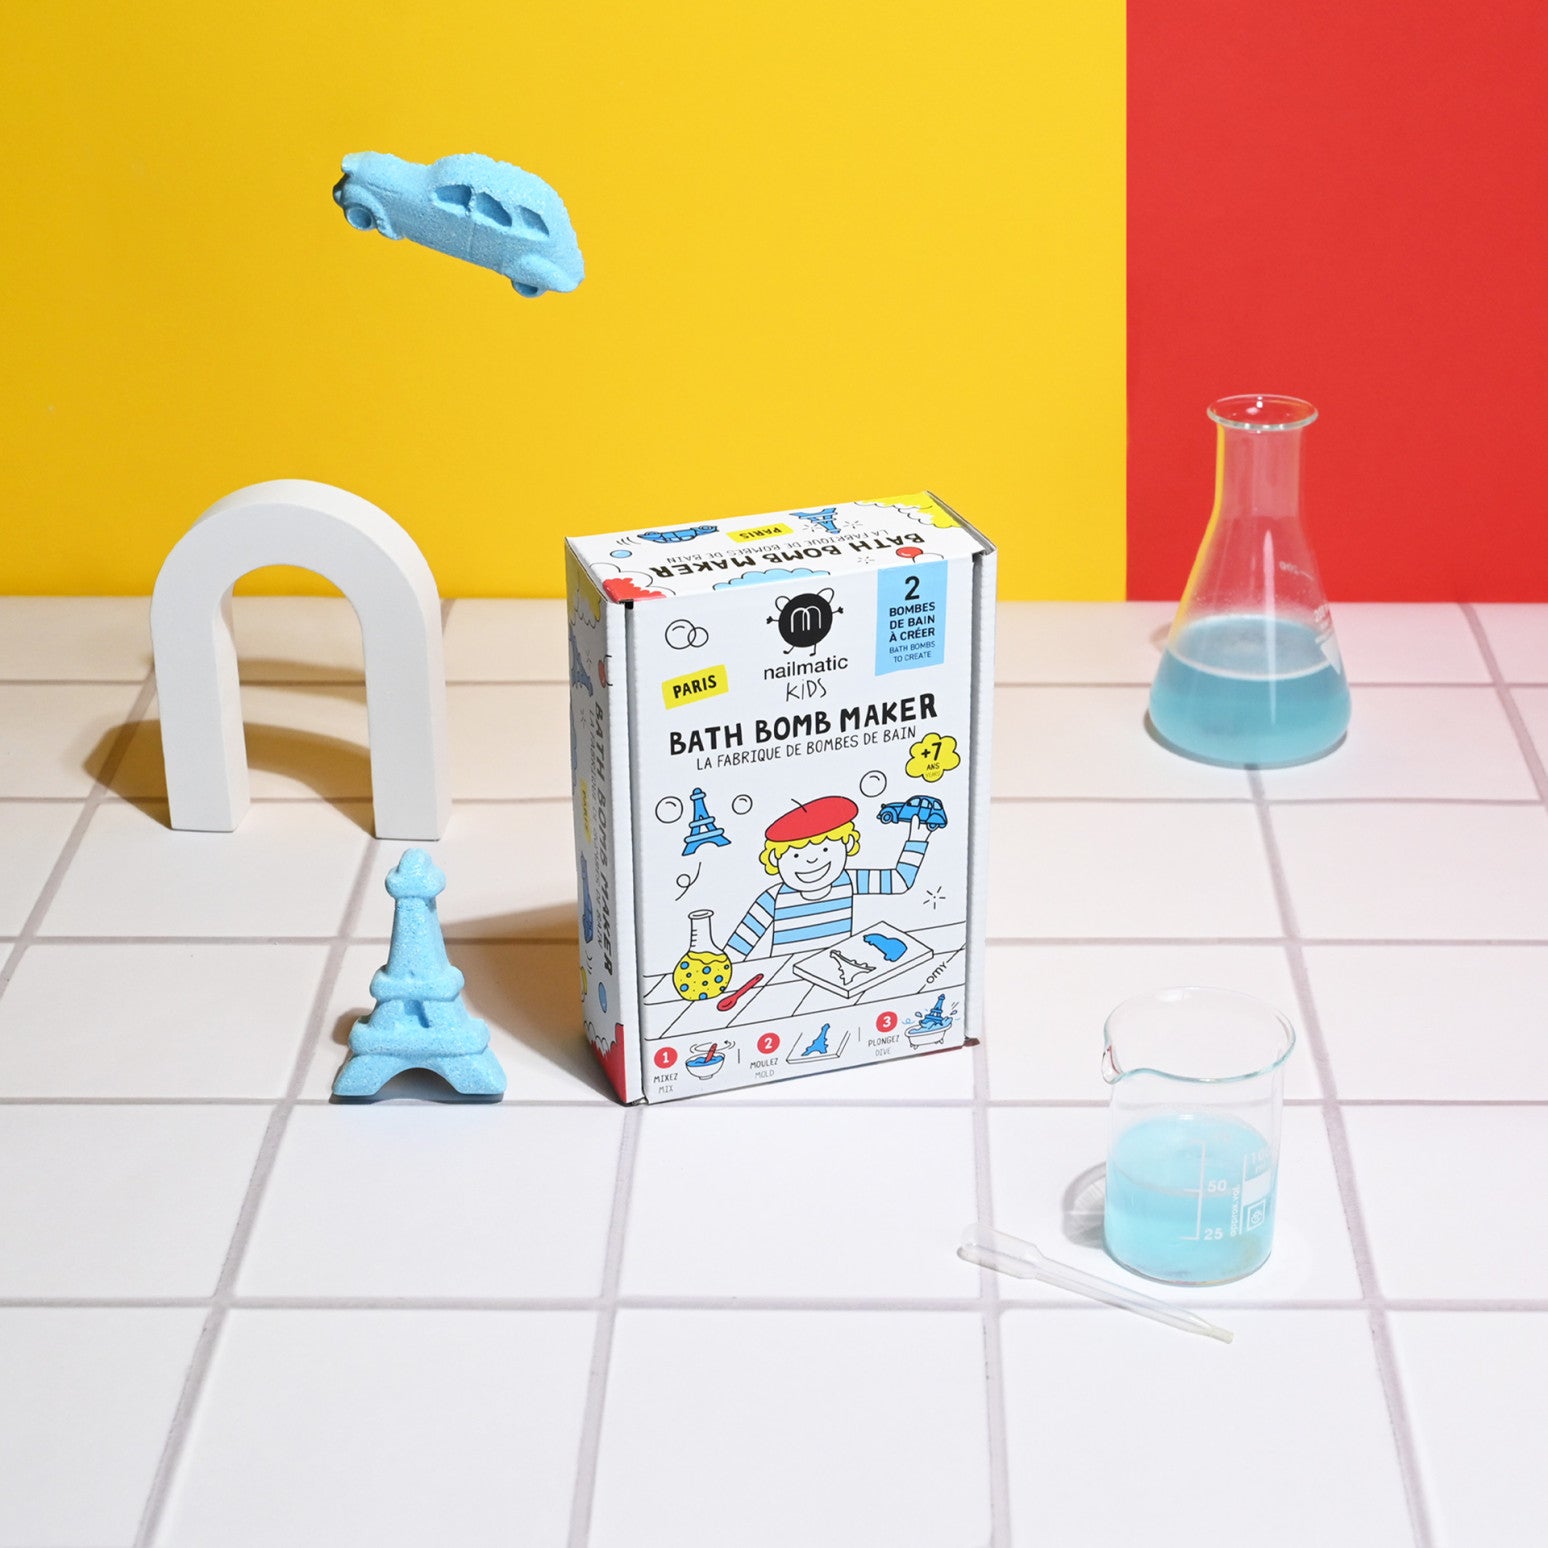 Kit DIY Bombes de Bain Paris - Nailmatic pour les Enfants – La